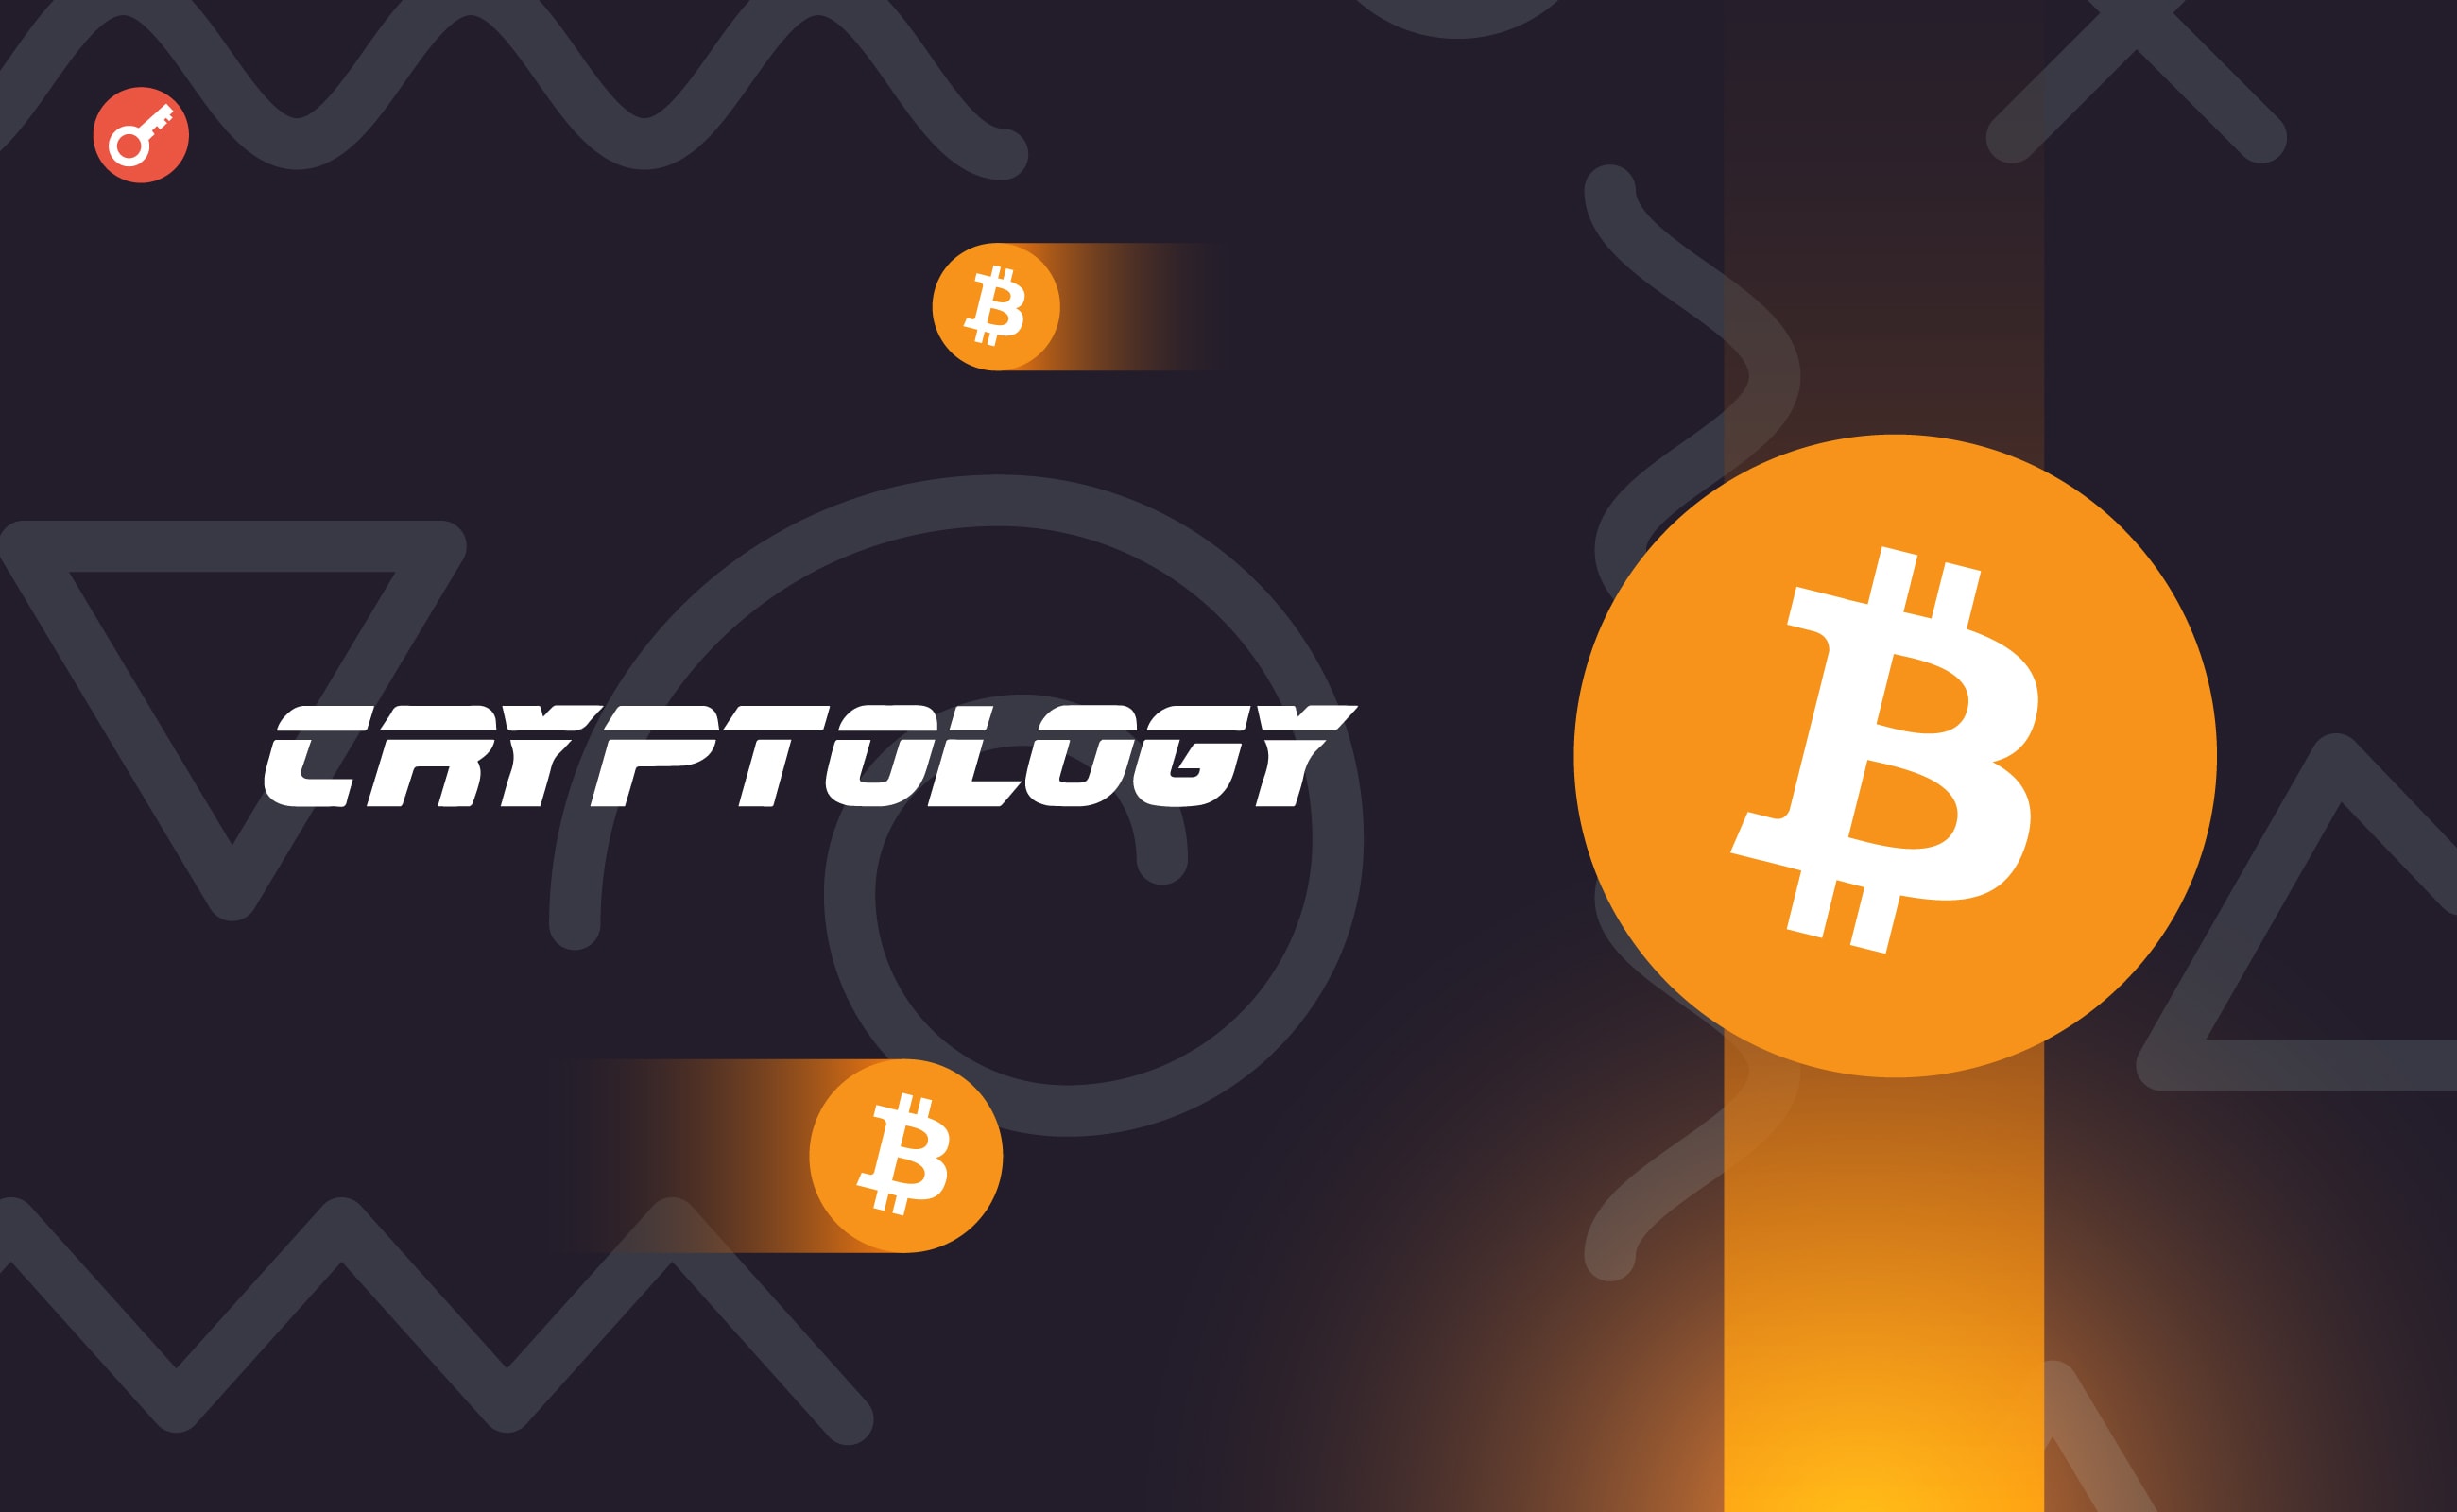 Эксперты Cryptology спрогнозировали курс биткоина и Ethereum. Заглавный коллаж новости.